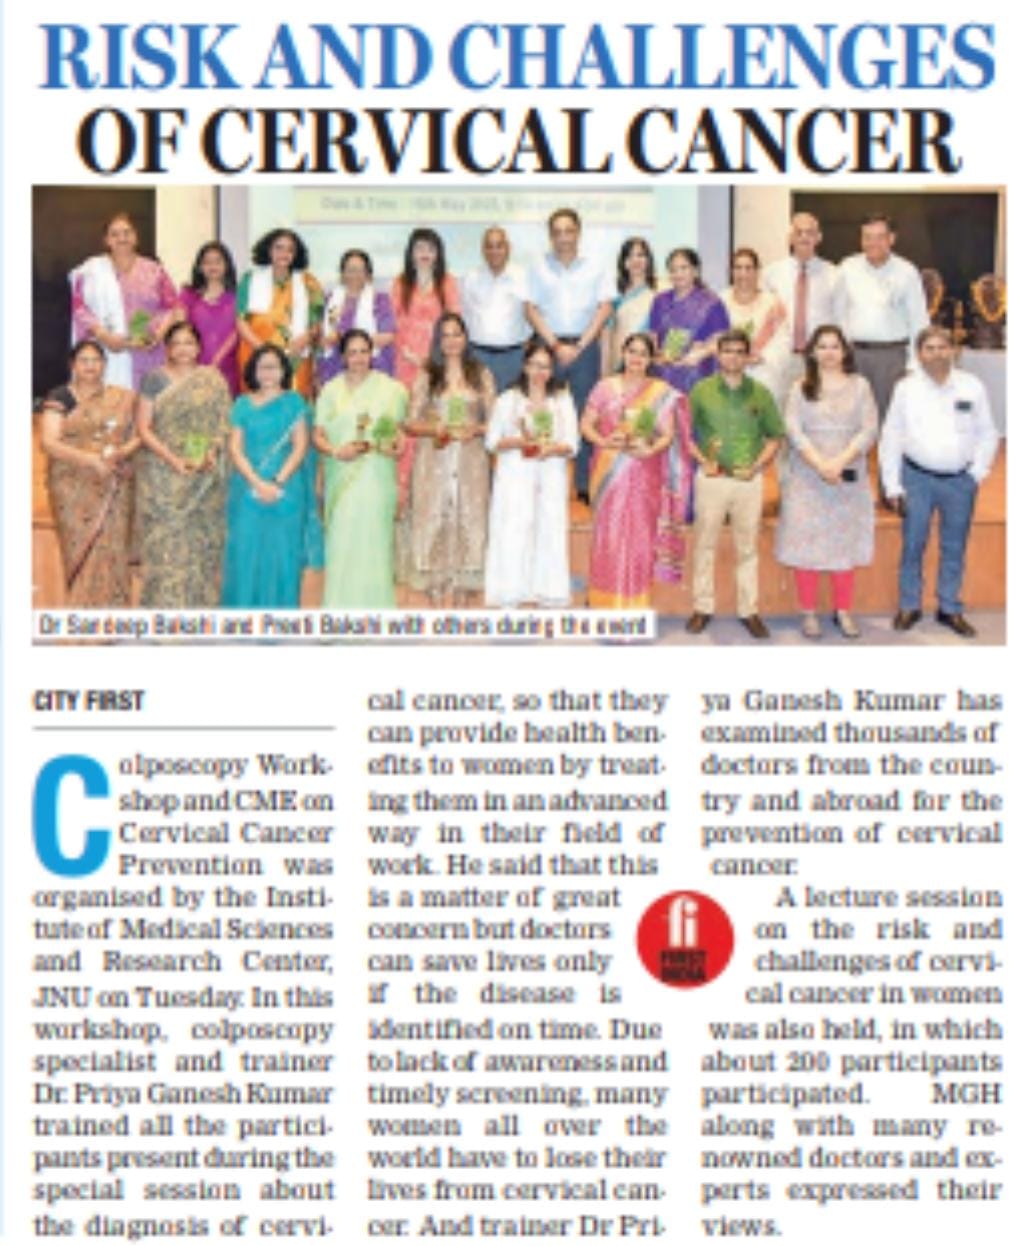 Risks and Challenges For Cervical Cancer